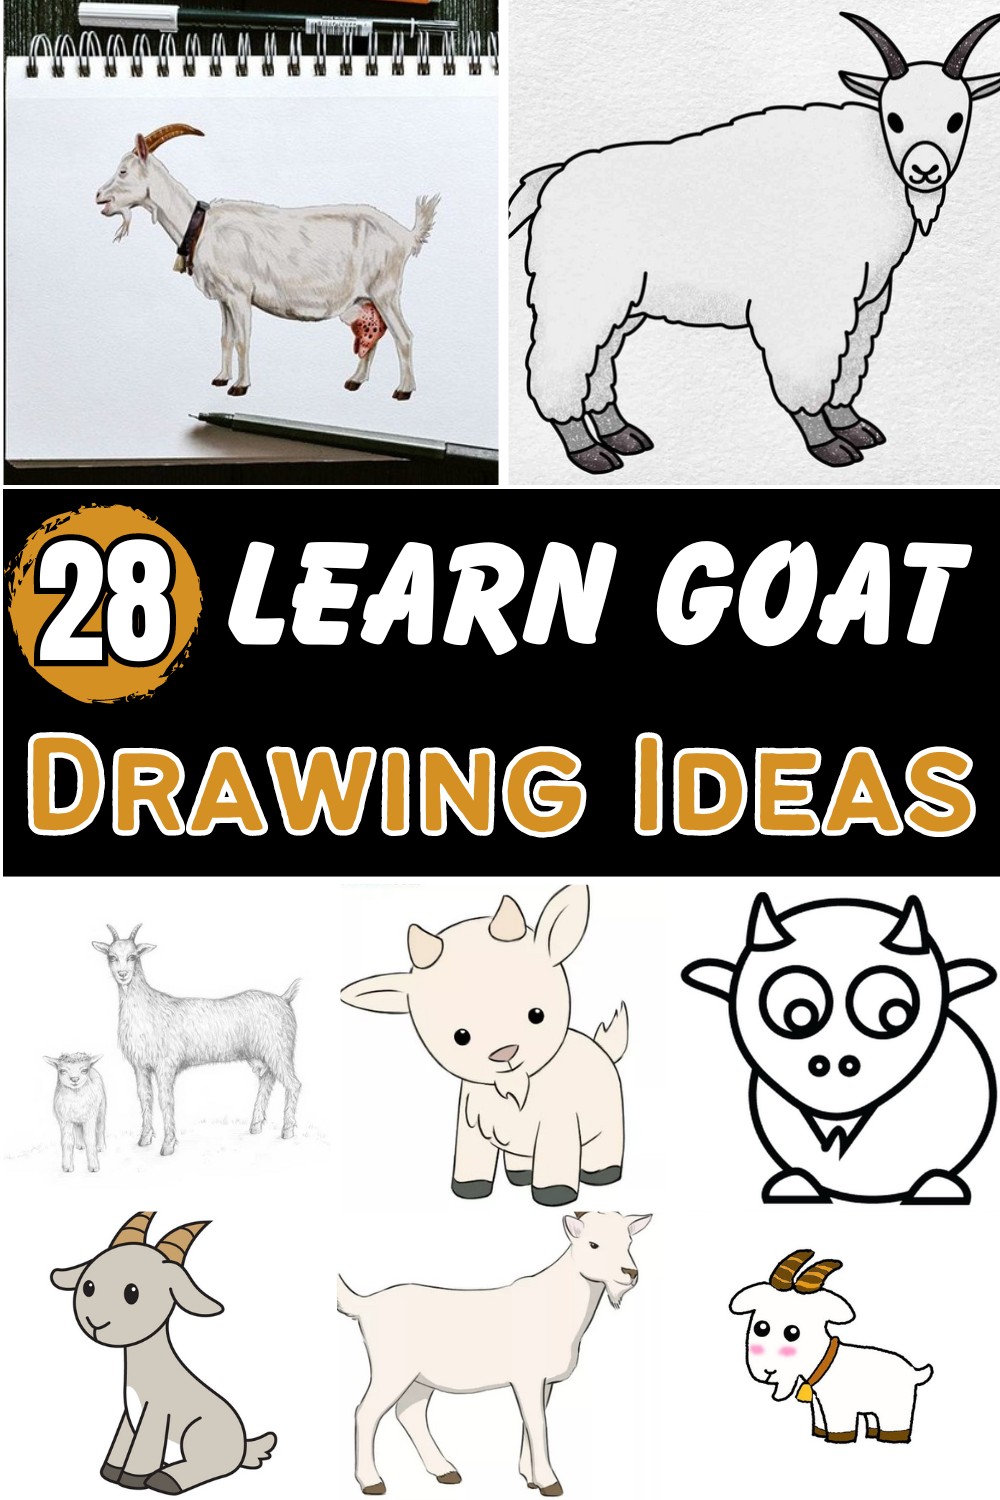 Learn Goat Drawing Ideas